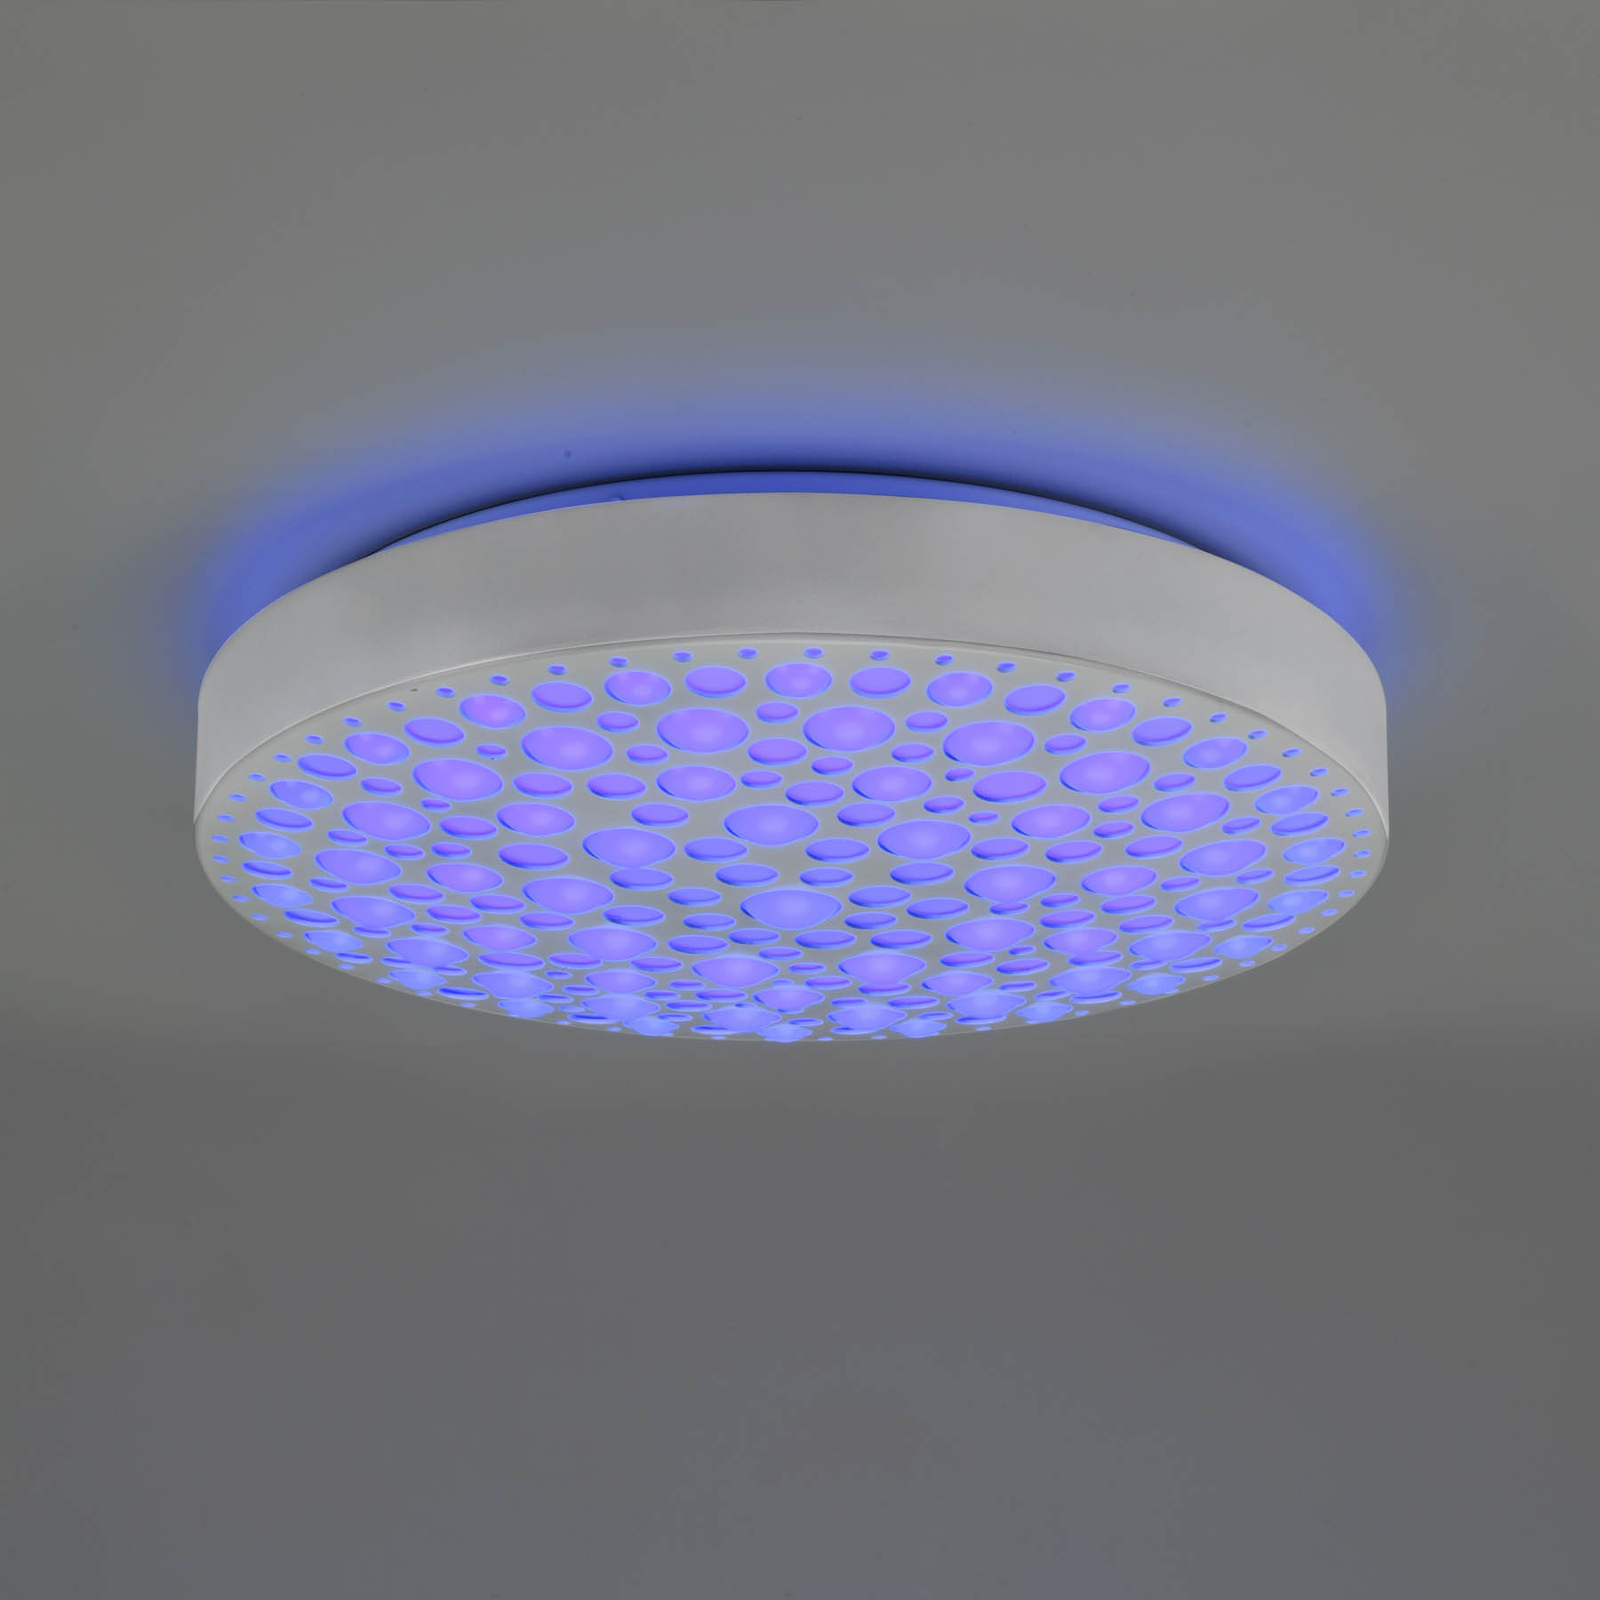 Plafonnier LED Chizu Ø 40,5 cm dimmable RVB blanc